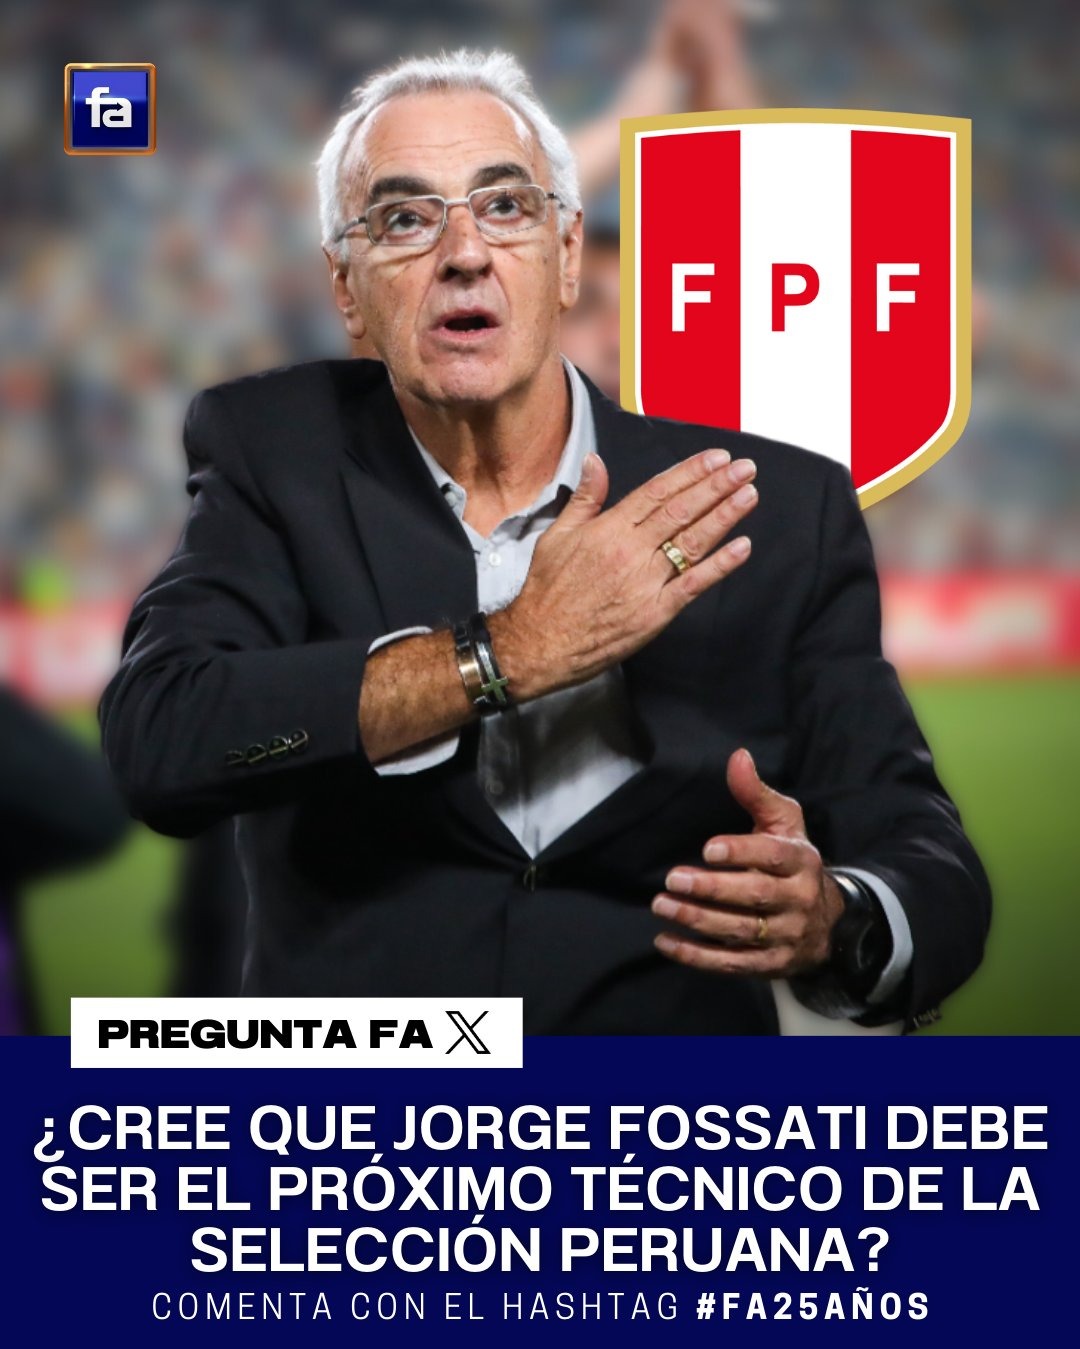 Hinchas responden si quieren a Jorge Fossati en la selección peruana. | Fuente: Fútbol en América